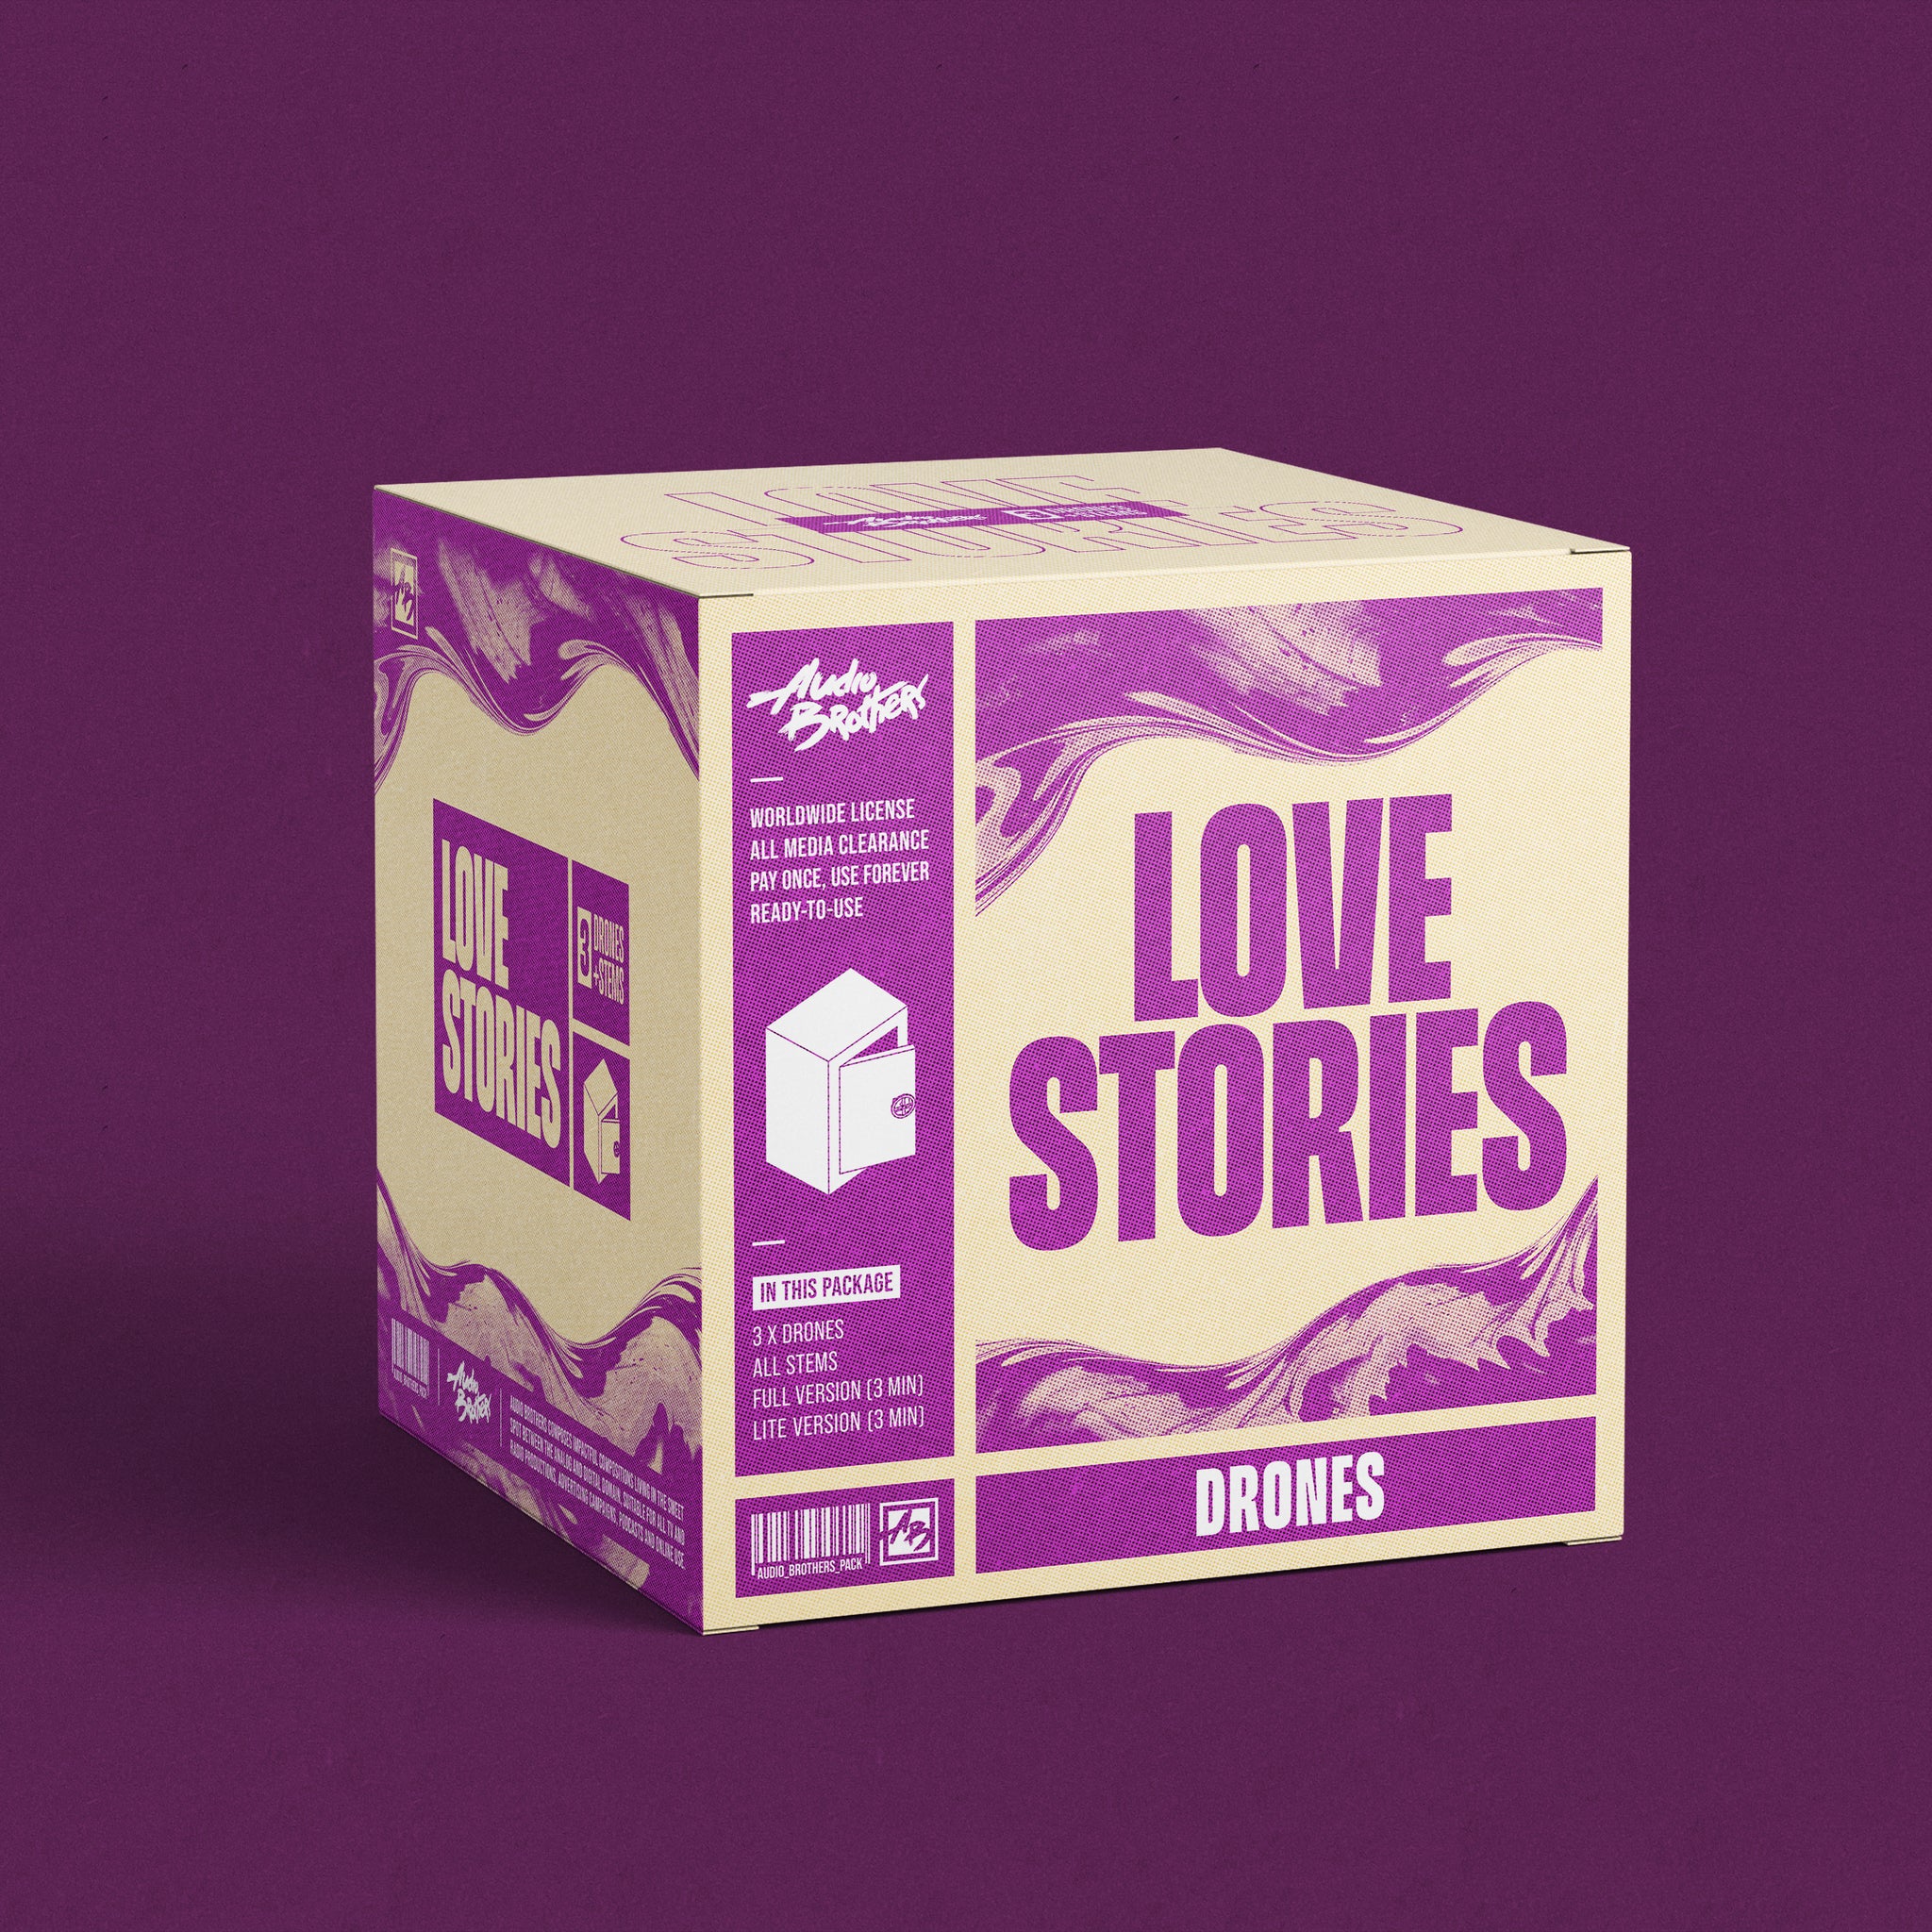 3x Drones - Love Stories